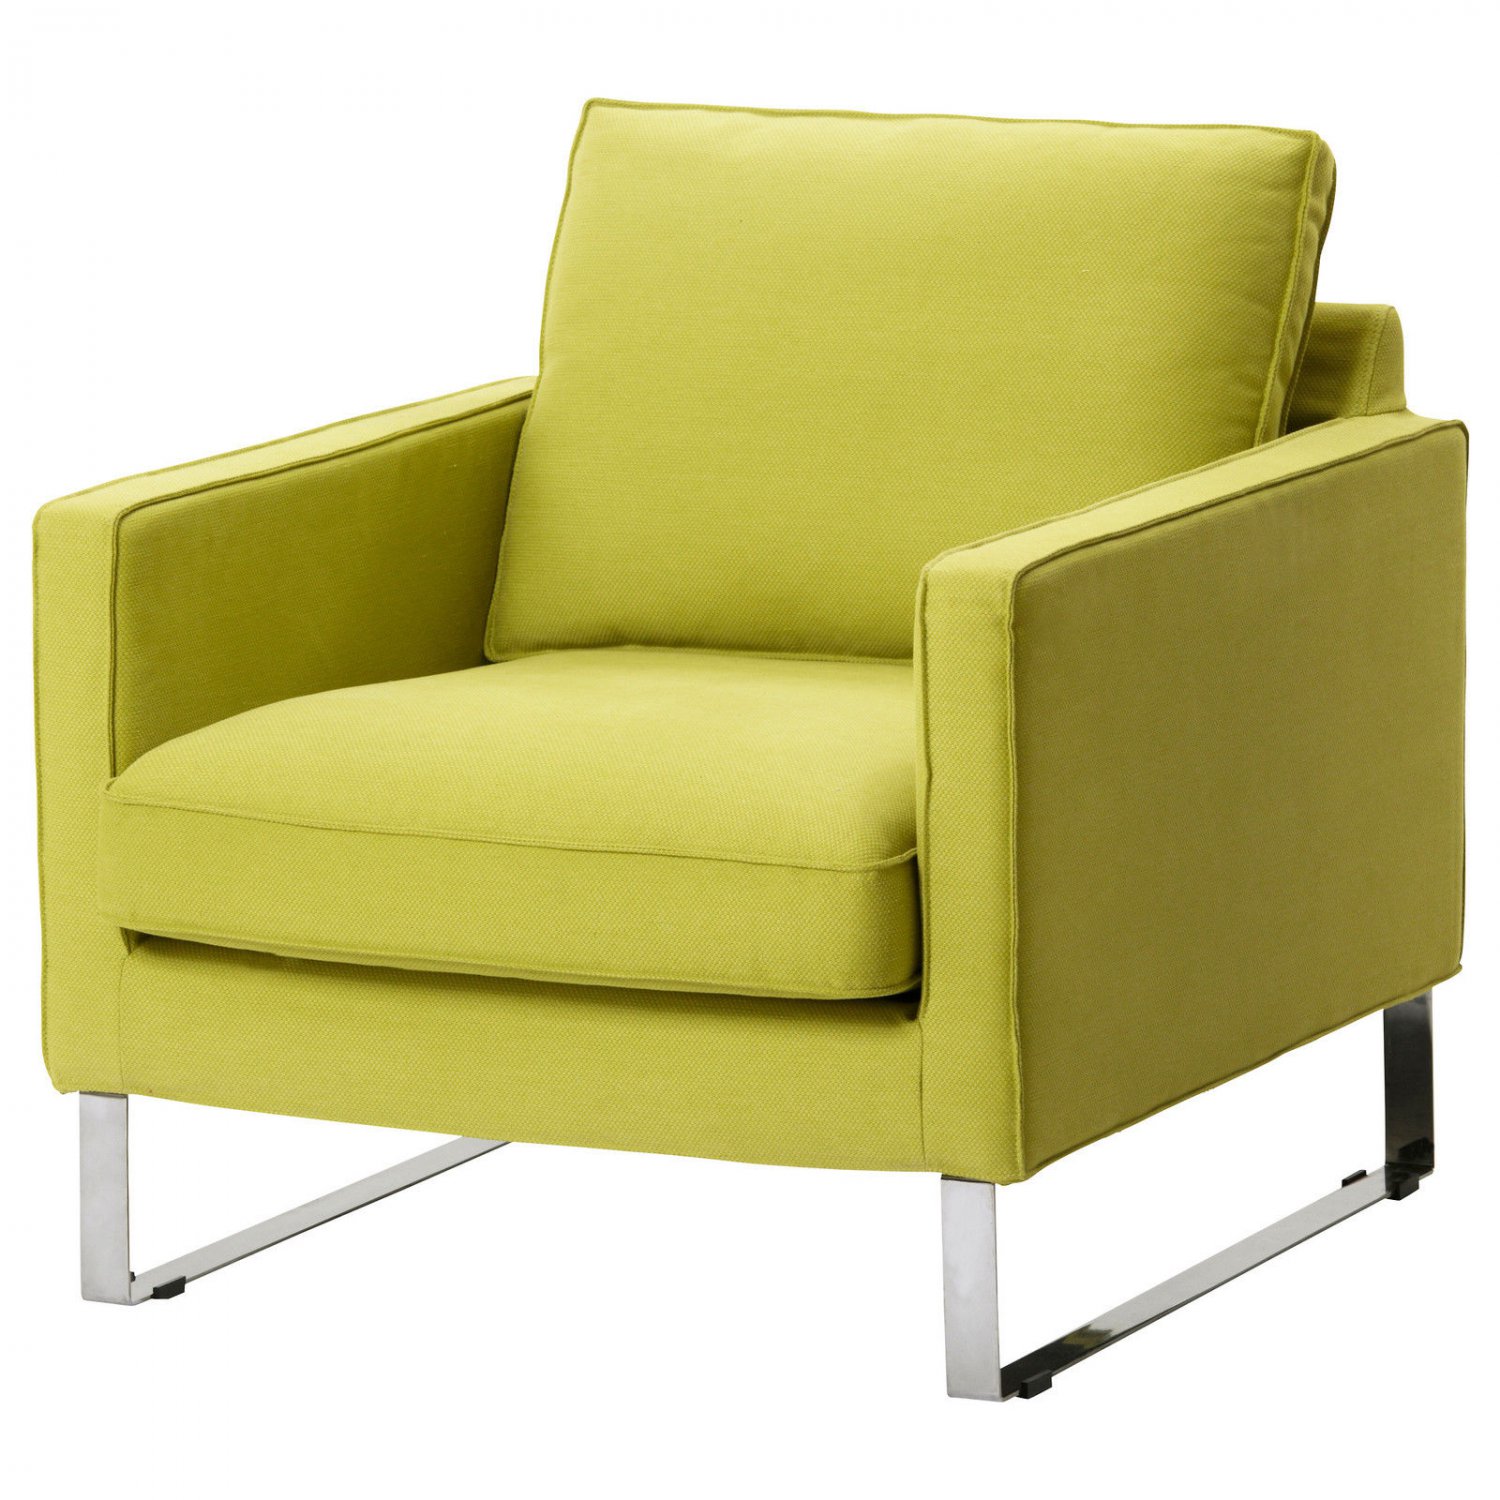 Авито кресло икеа. Кресло Мелби икеа. Кресло икеа Armchair. Зеленое кресло ikea. Muren раскладное кресло ikea.